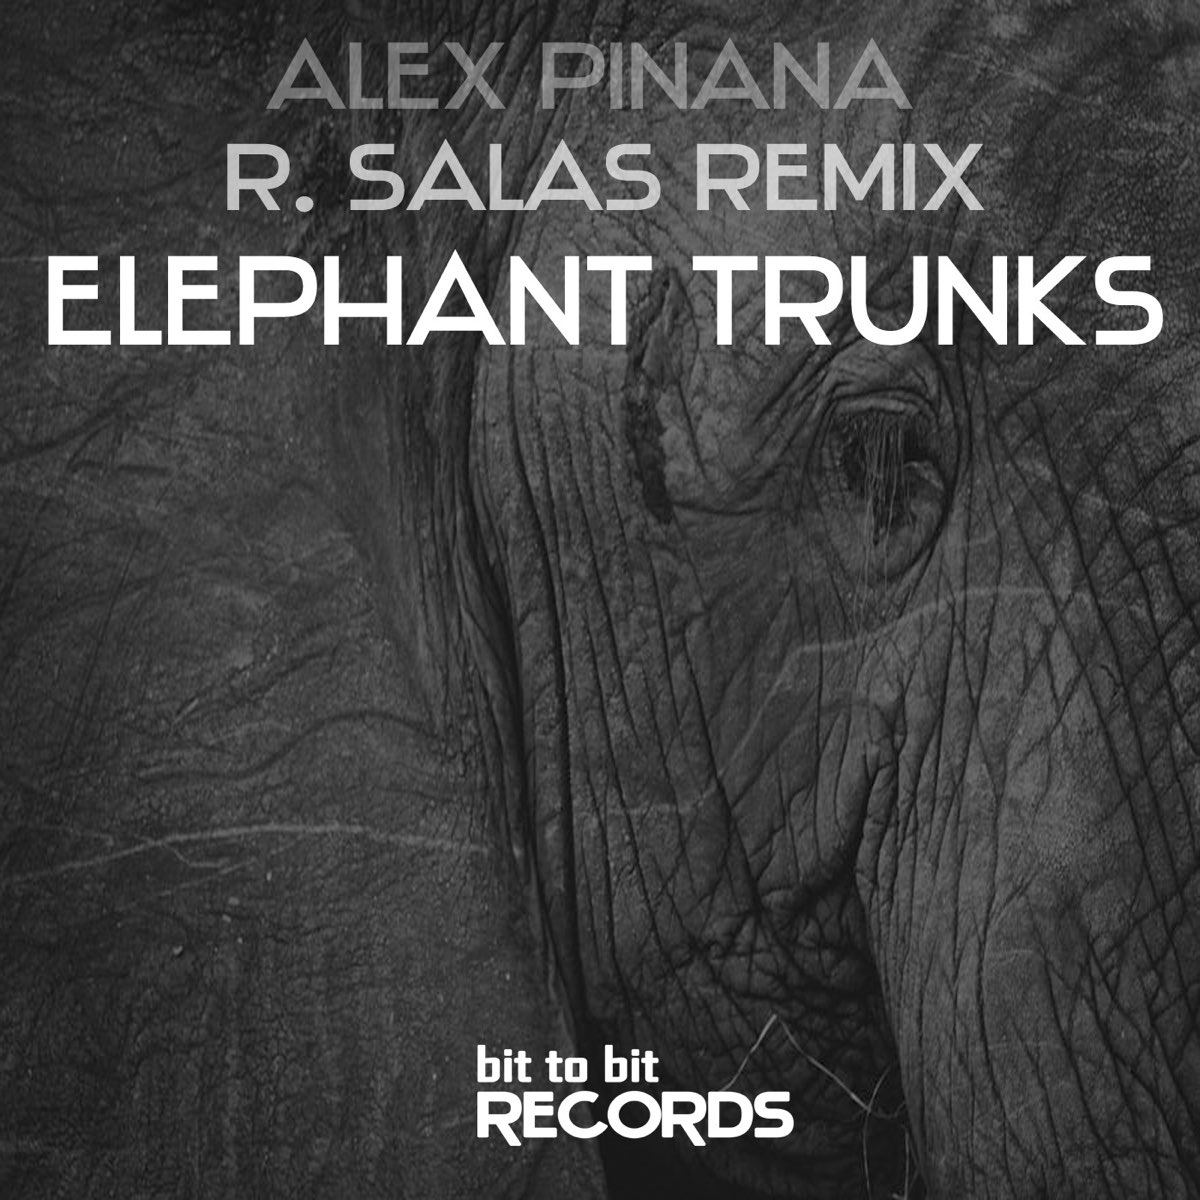 Elephant remix. Песня elefante. Слон слушает музыку.